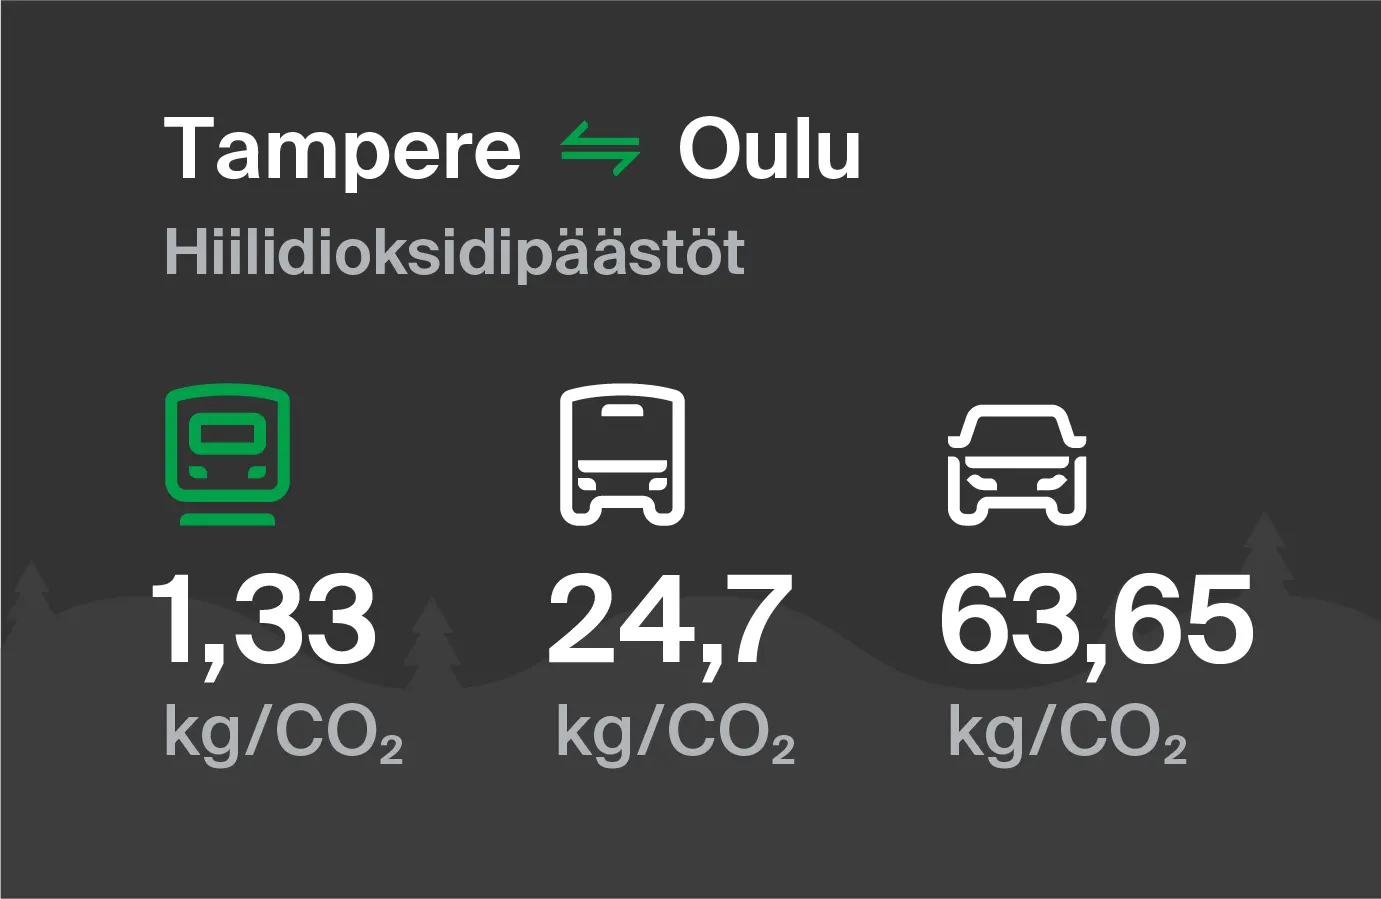 Koldioxidutsläpp från Tammerfors till Uleåborg genom olika transportsätt: med tåg 1,33 kg/CO2, med buss 24,7 kg/CO2 och med bil 63,65 kg/CO2.